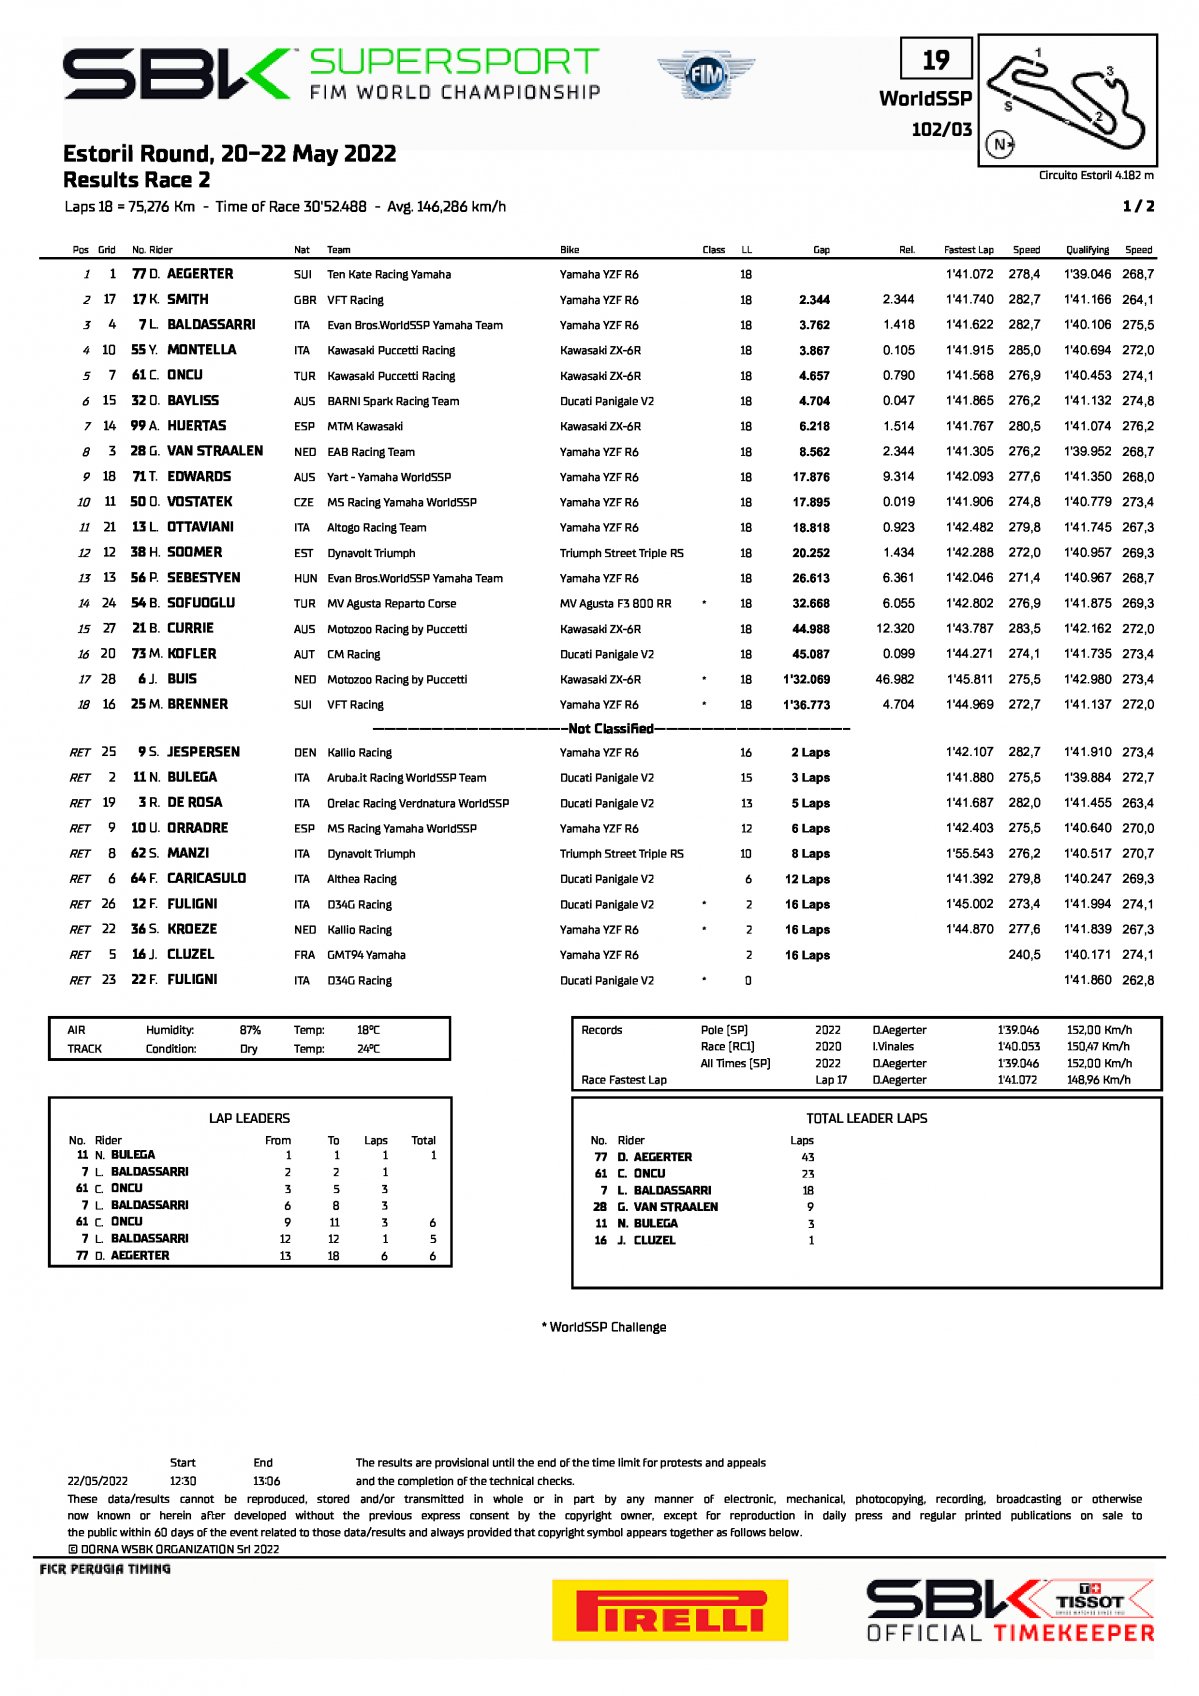 Результаты 2-й гонки World Supersport, EstorilWorldSBK, 22/05/2022